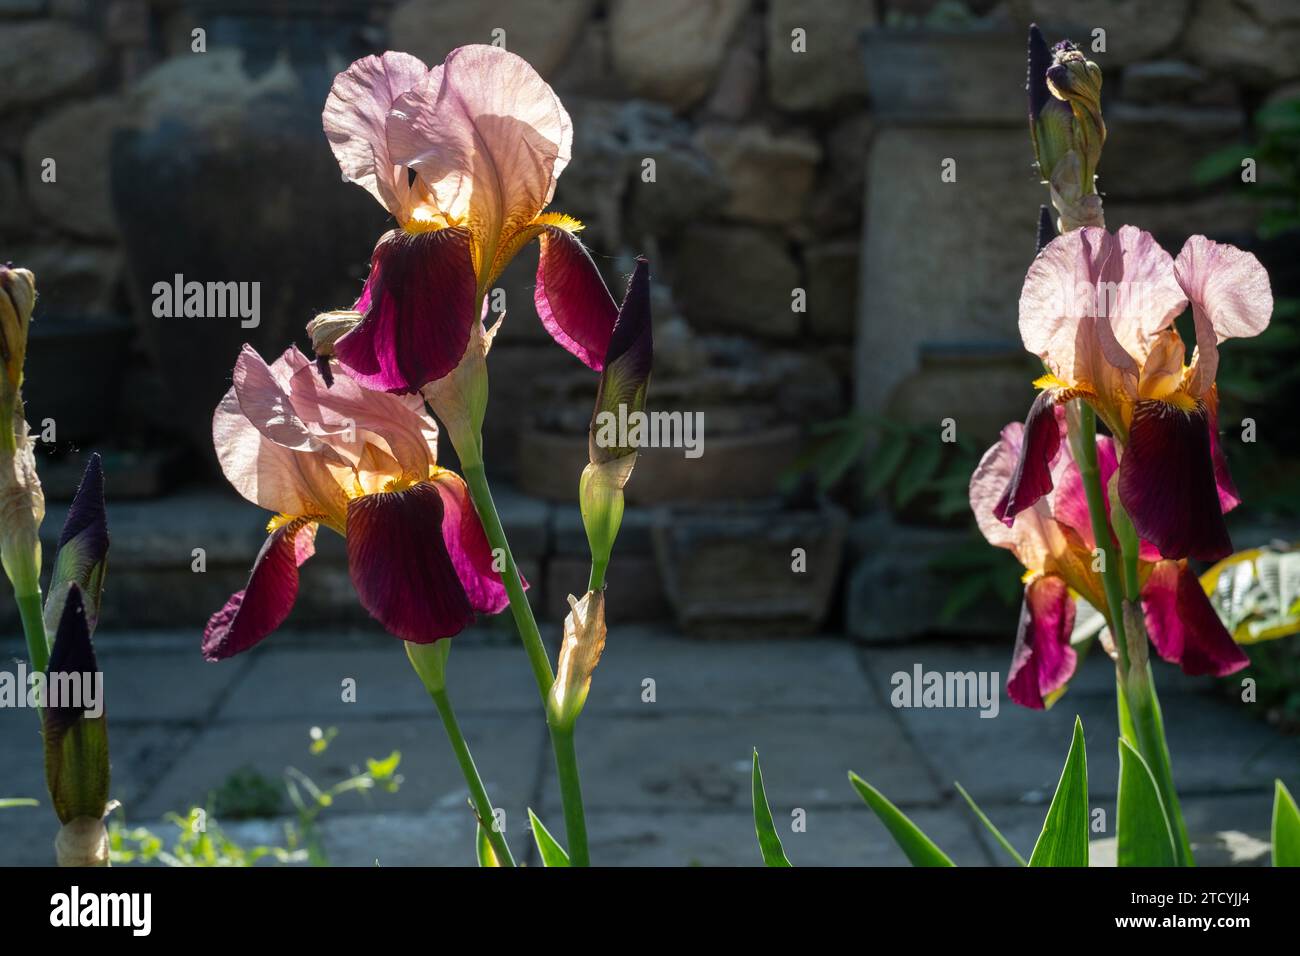 German Iris or Iris germanica, flower Stock Photo